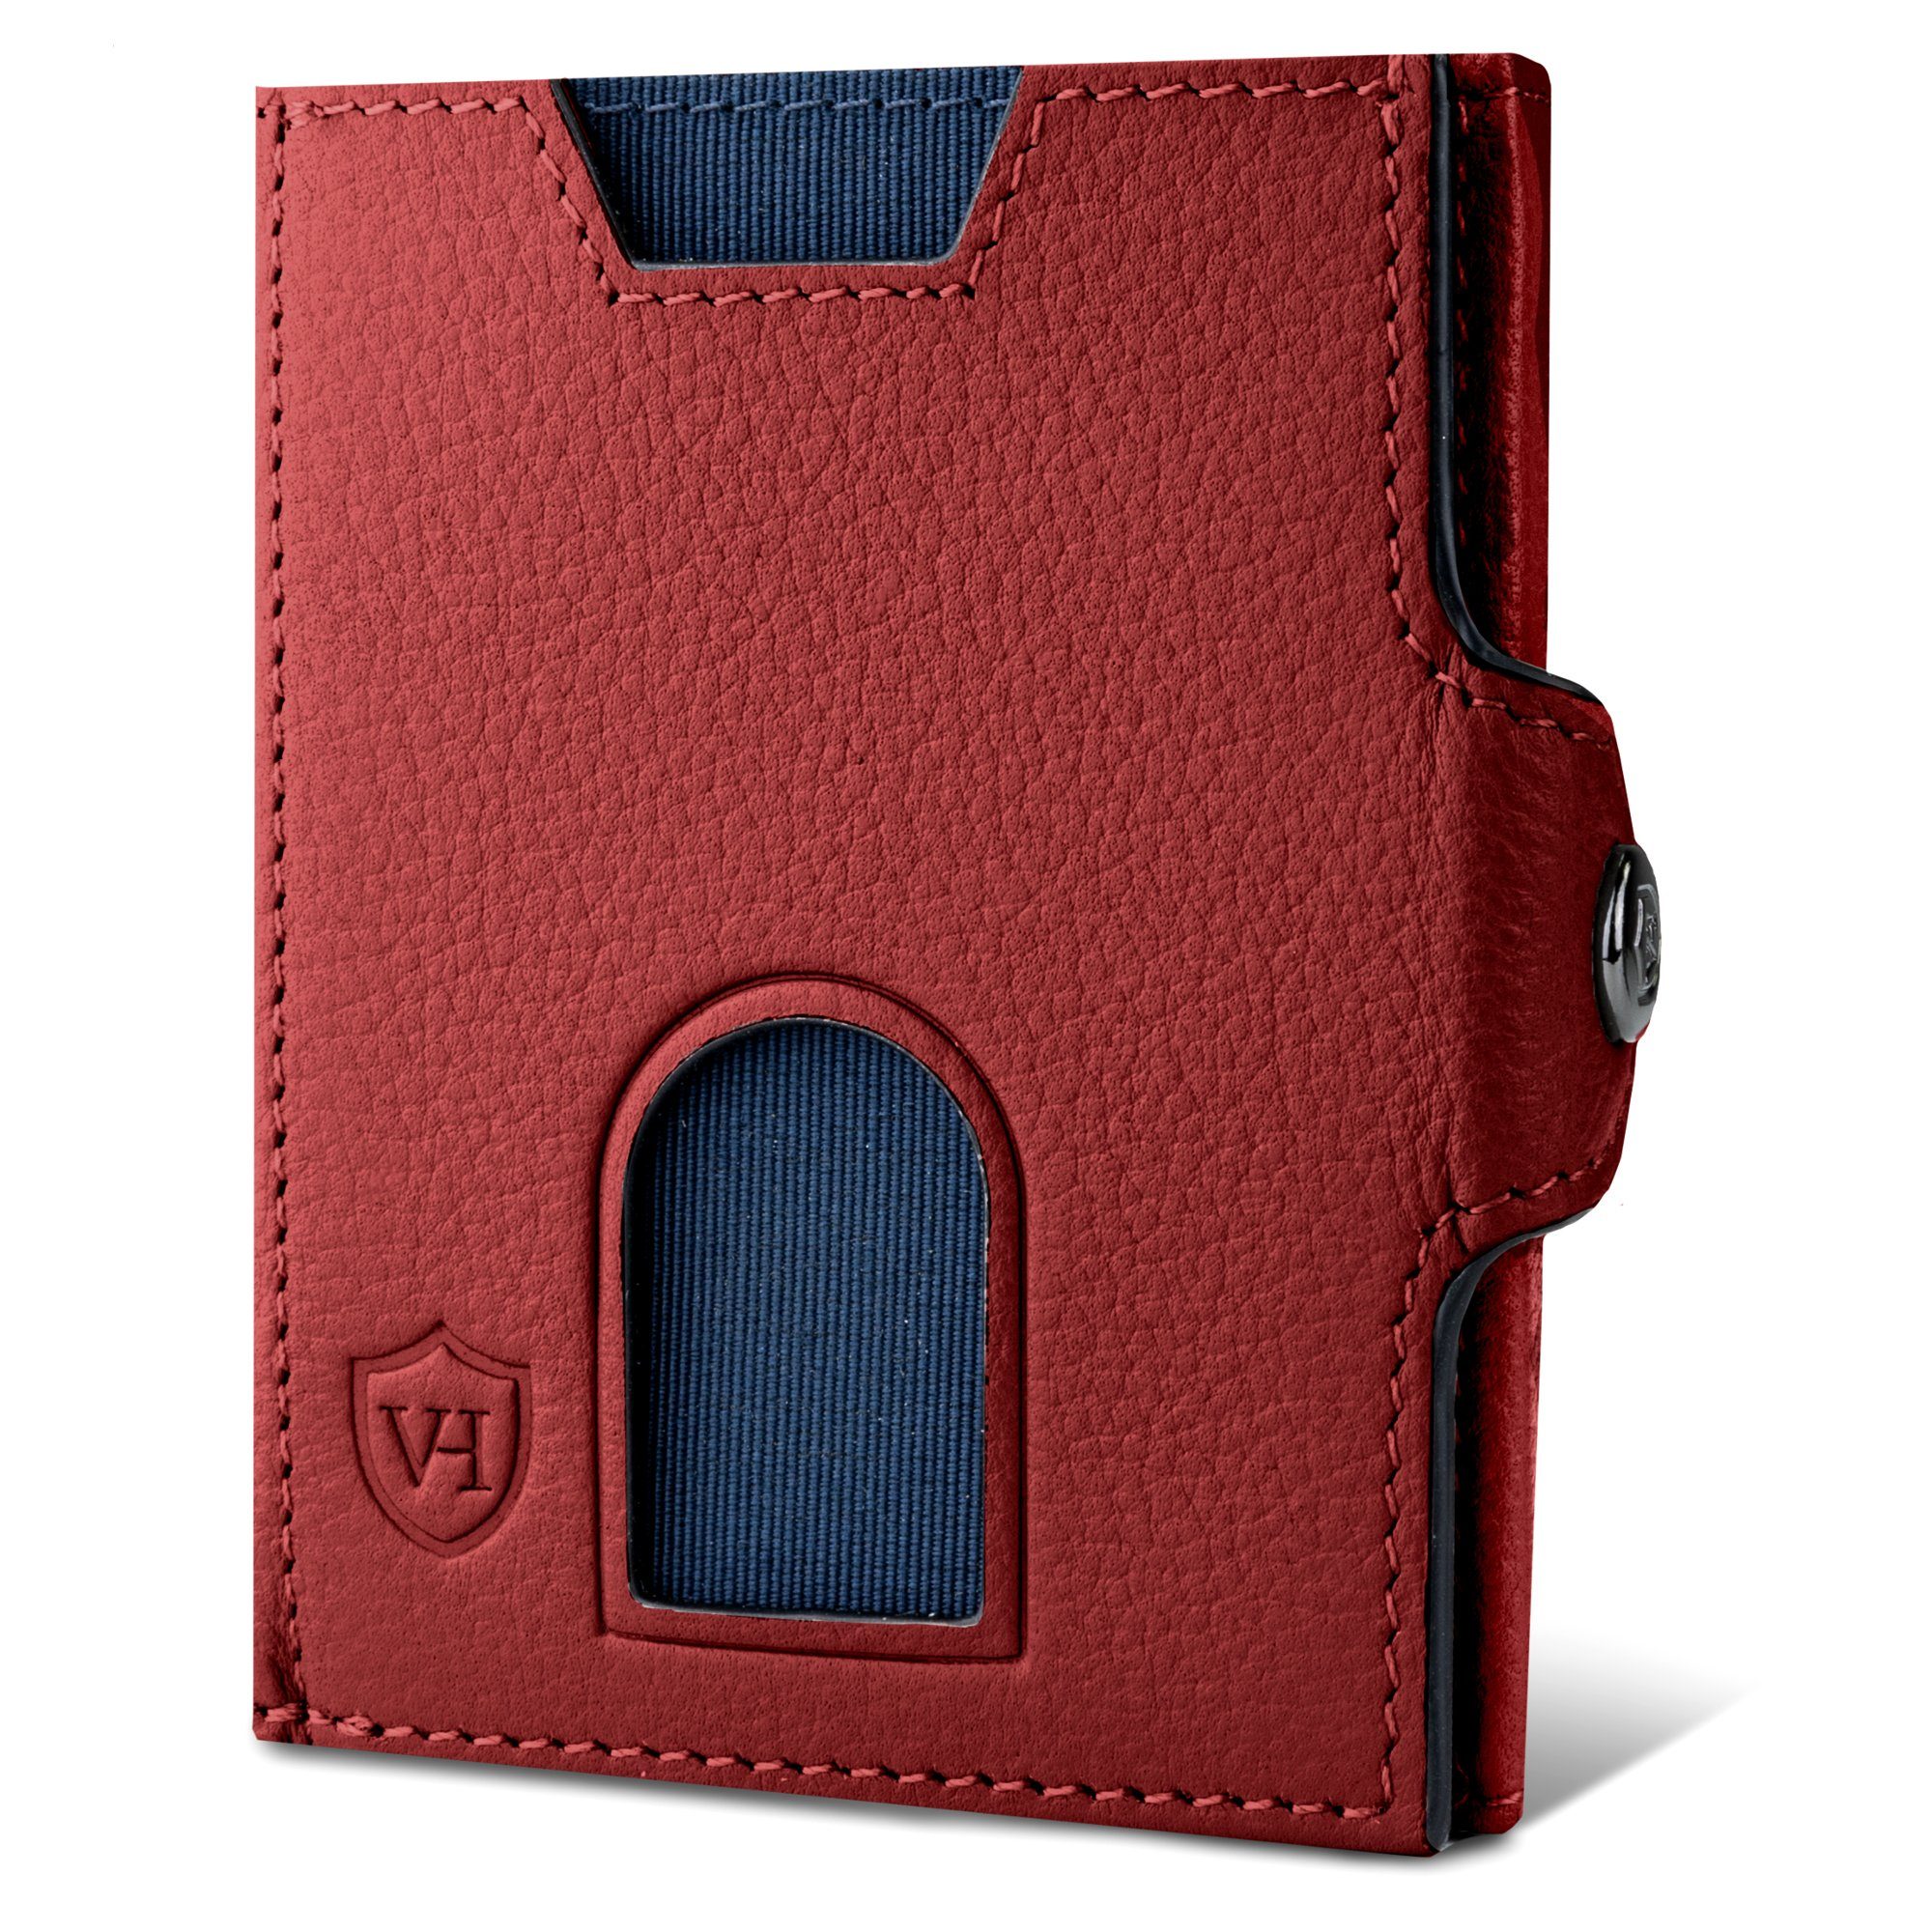 VON HEESEN Geldbörse Whizz Wallet mit 5 Kartenfächer & XL-Münzfach, Slim Wallet Geldbeutel Portemonnaie inkl. RFID-Schutz & Geschenkbox Rot